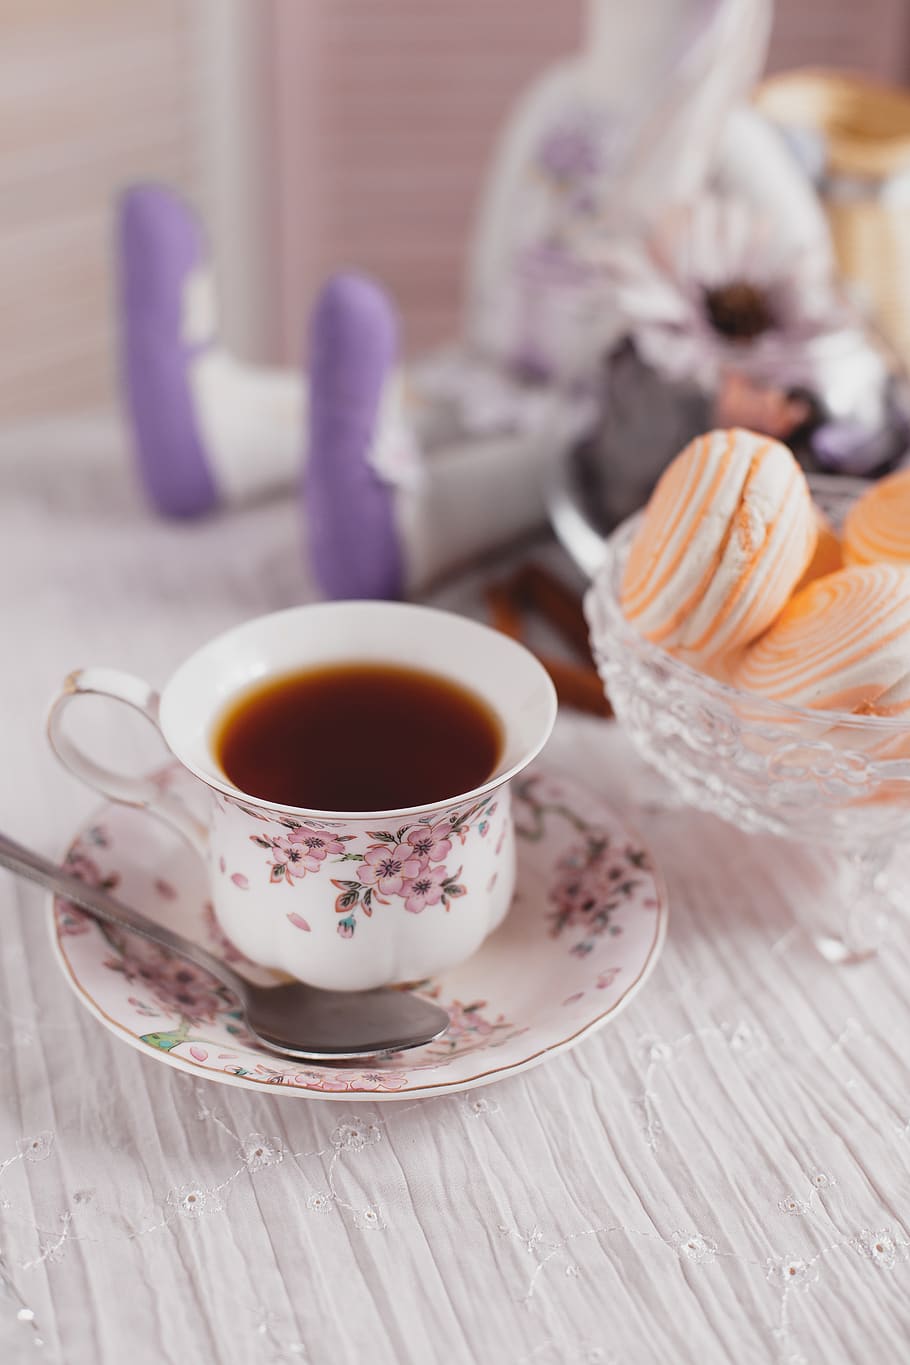 tea, sweet, morning, dessert, drink, romantic, saucer, cookies, tea party, breakfast